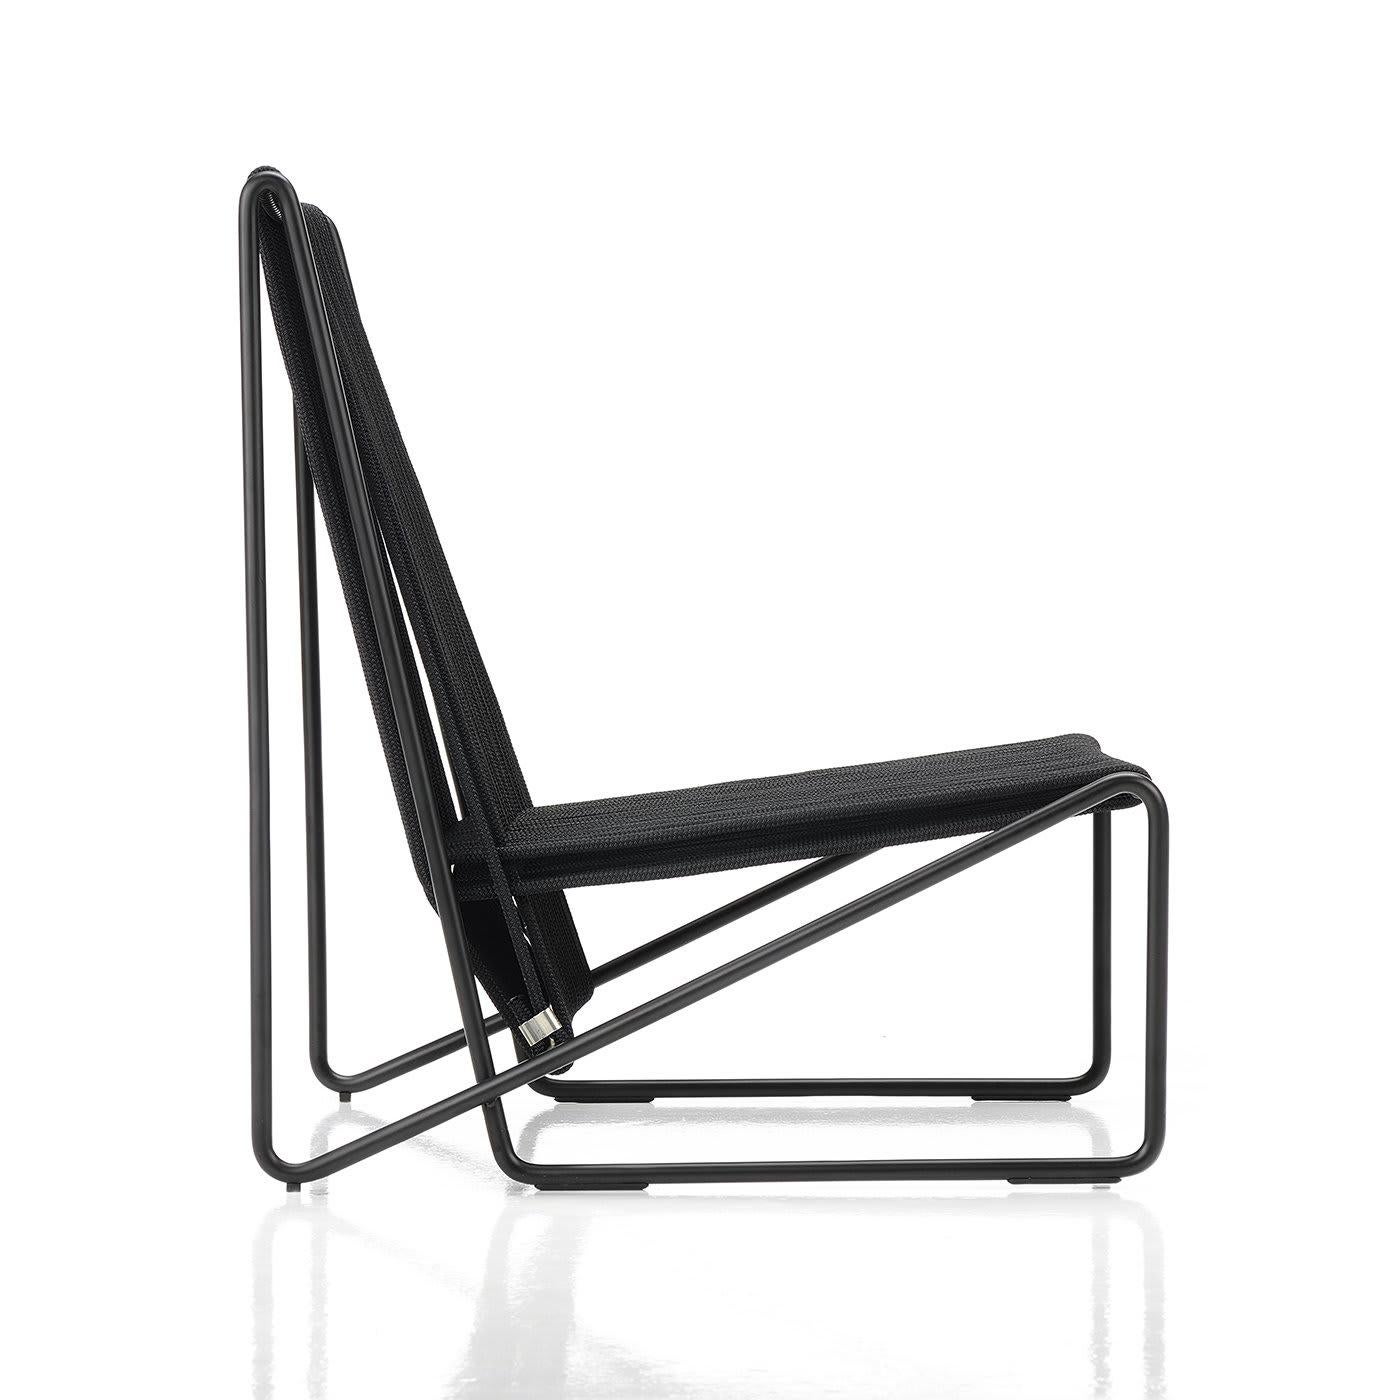 Dieser Loungesessel besteht aus einer verzinkten Stahlrohrstruktur, die schwarz lackiert wurde. Sitz und Rückenlehne sind mit einem geflochtenen schwarzen Segeltuch bezogen. Der Artikel liegt niedrig auf dem Boden und hat eine leicht geneigte